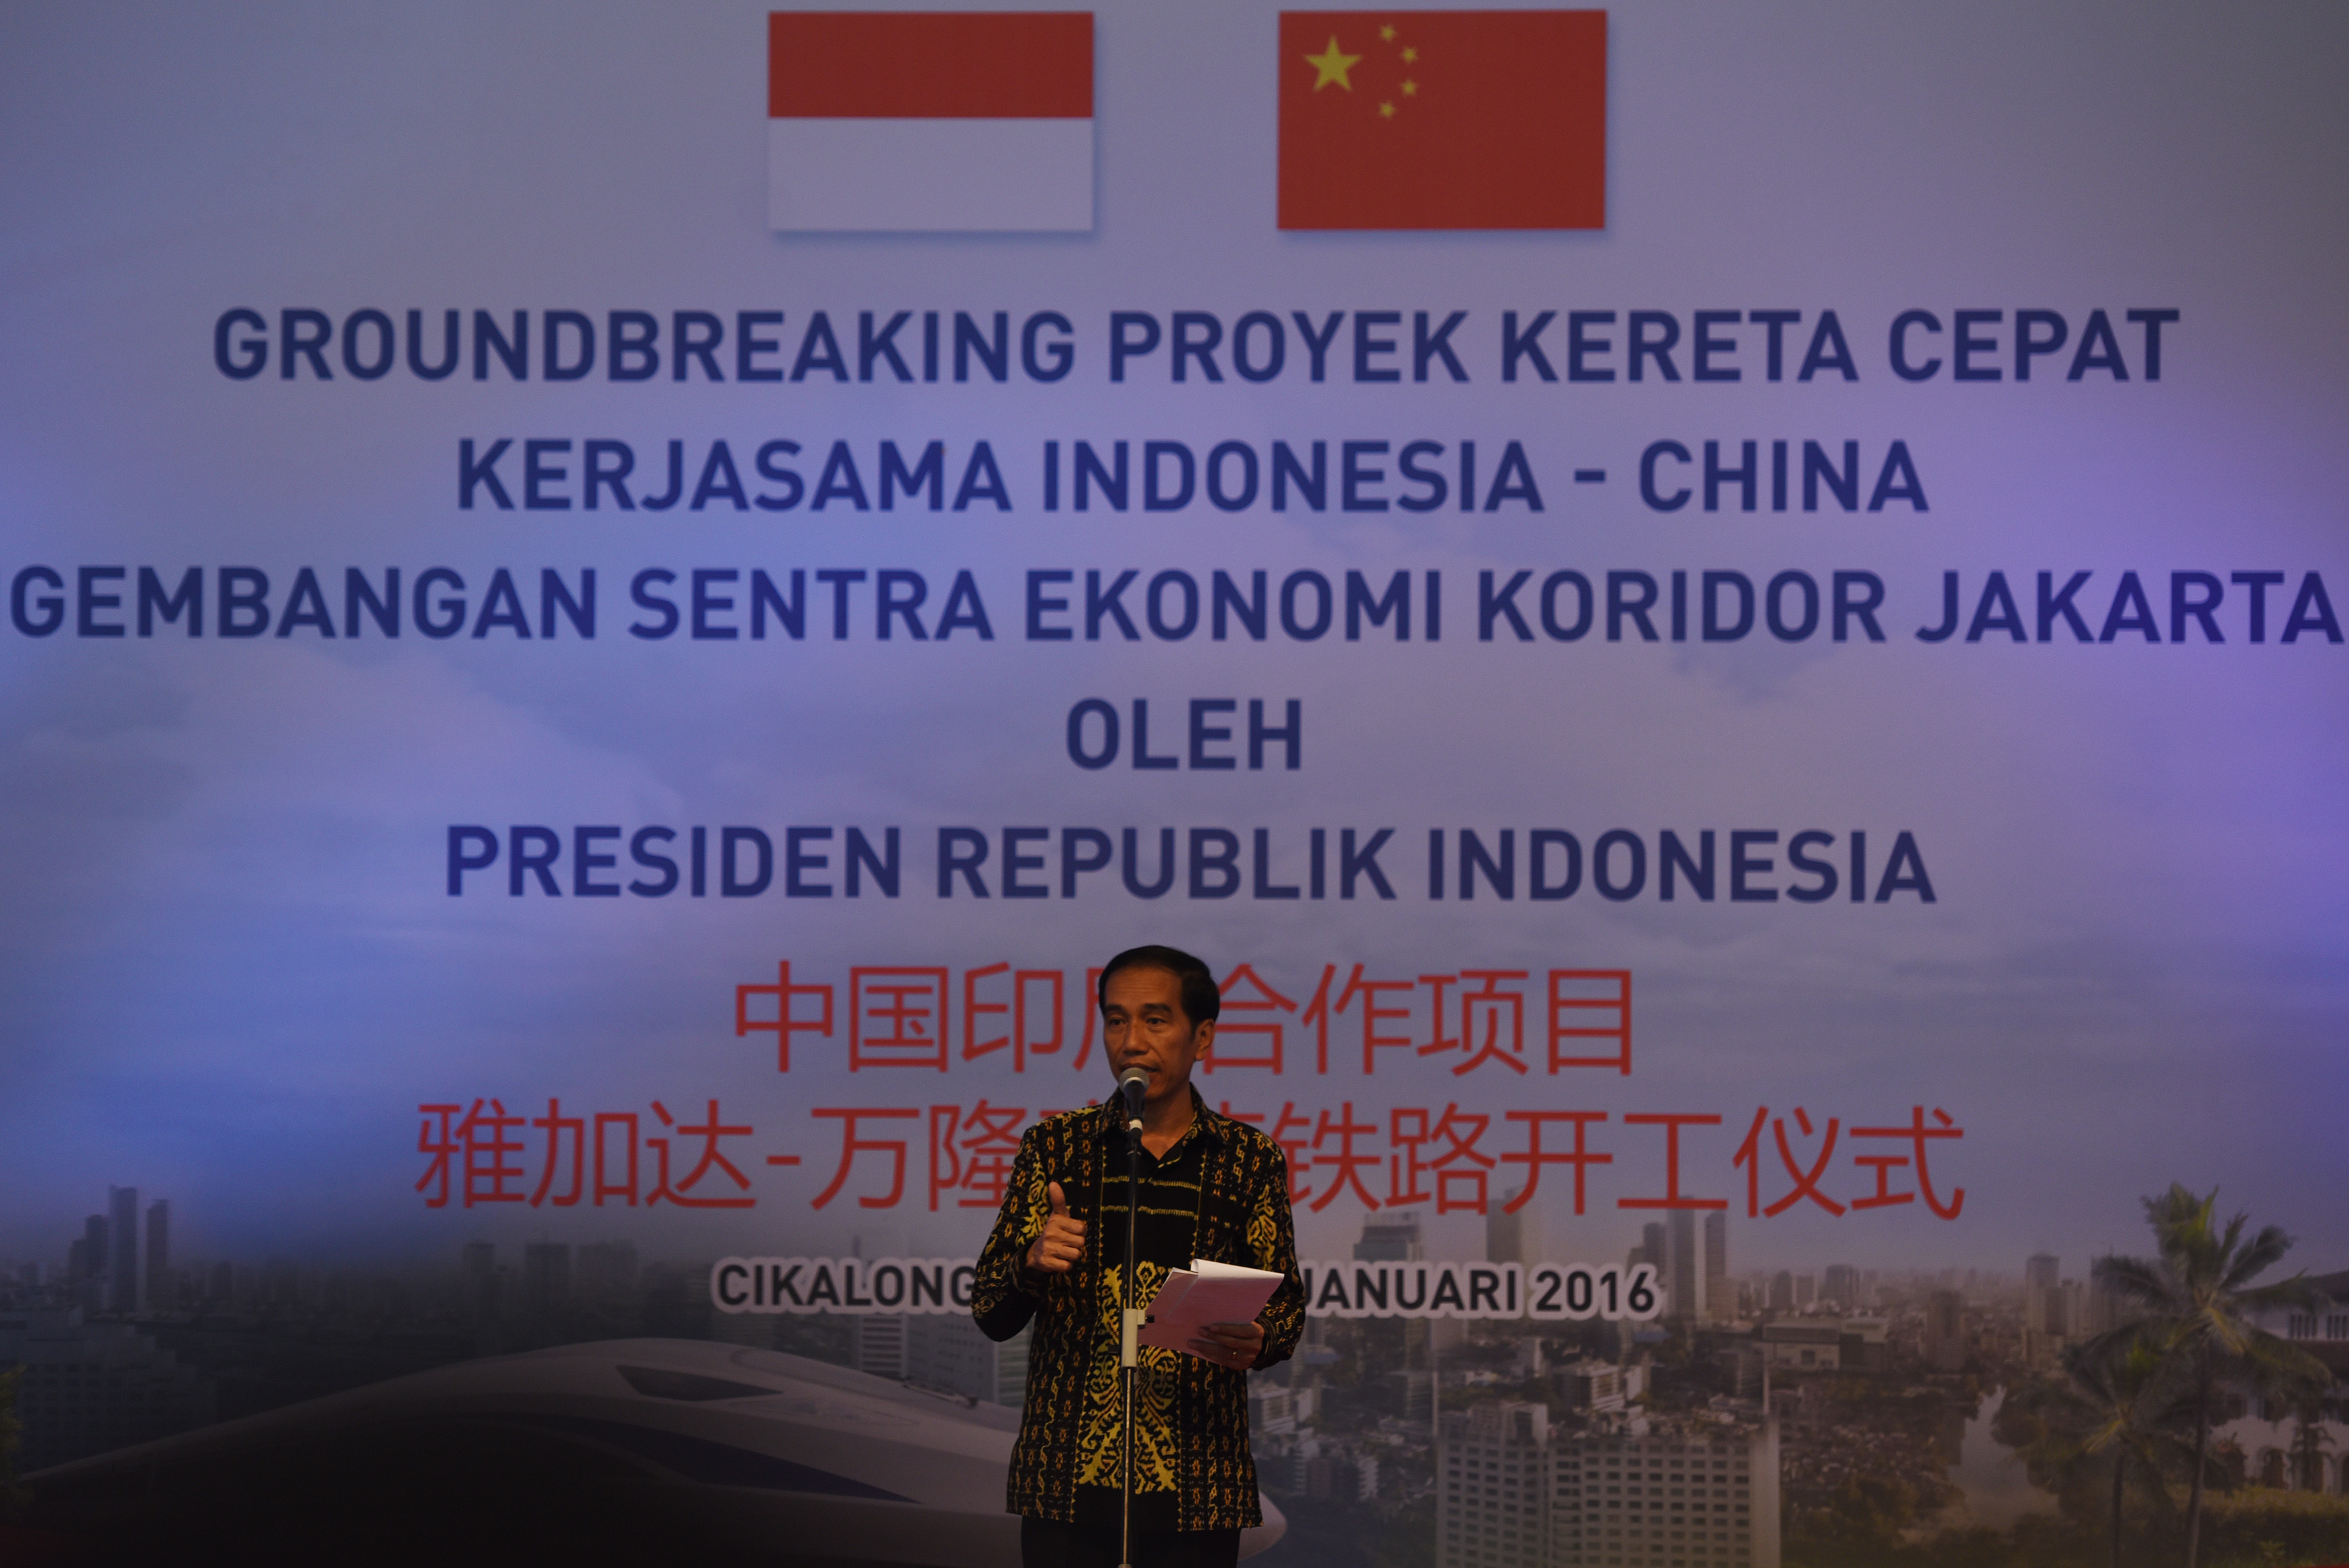 Presiden Jokowi menyampaikan pidato saat 'groundbreaking' pembangunan Kereta Cepat Jakarta-Bandung di Cikalong Wetan, Bandung Barat, Jawa Barat, pada 21 Januari 2016. Foto oleh Hafidz Mubarak/Antara 